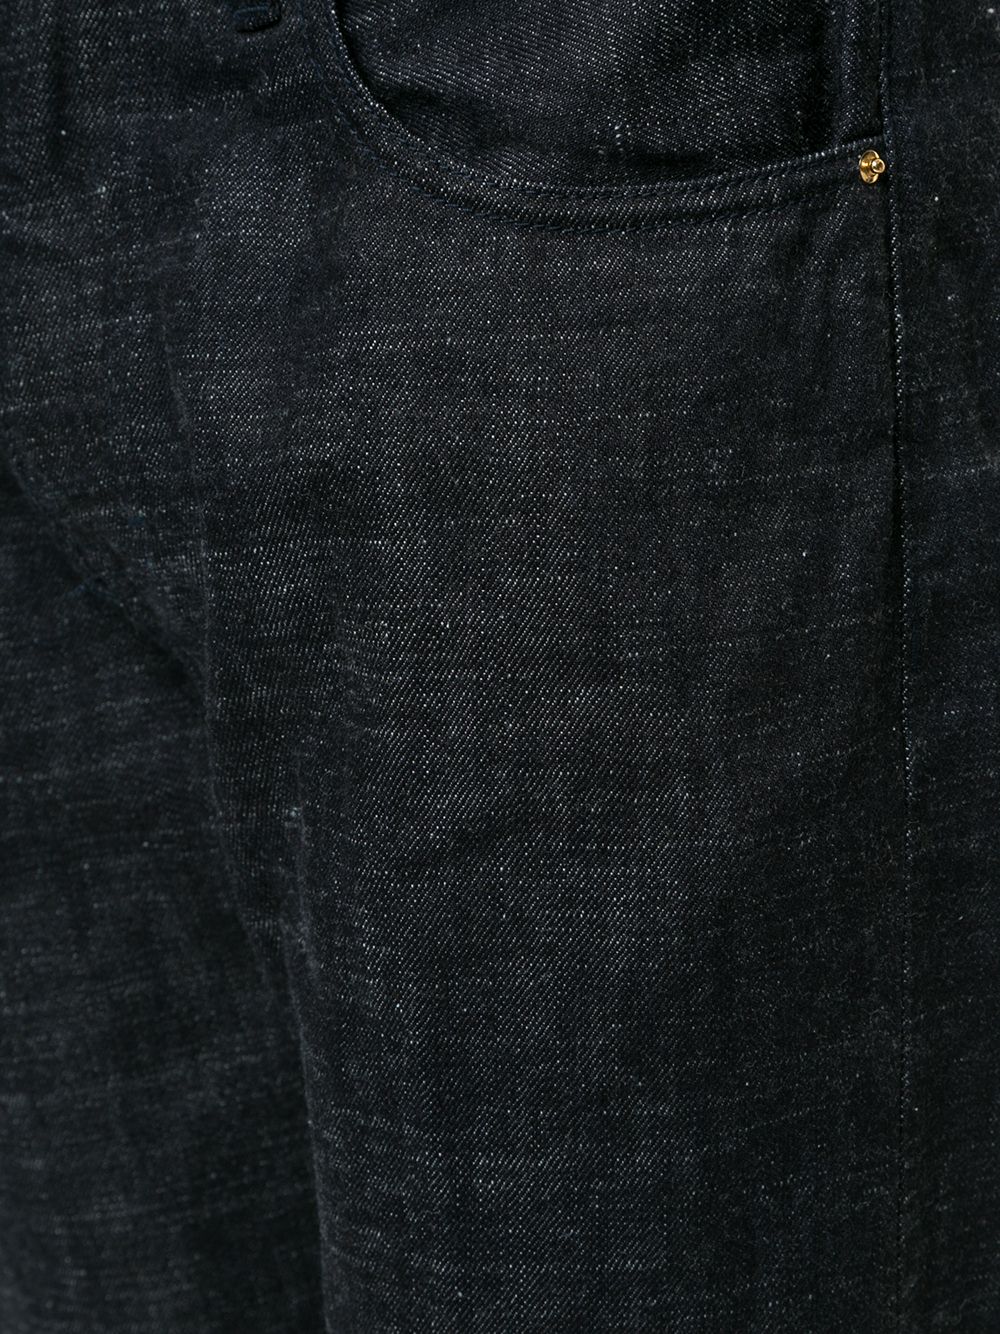 фото Giorgio armani джинсы с пятью карманами